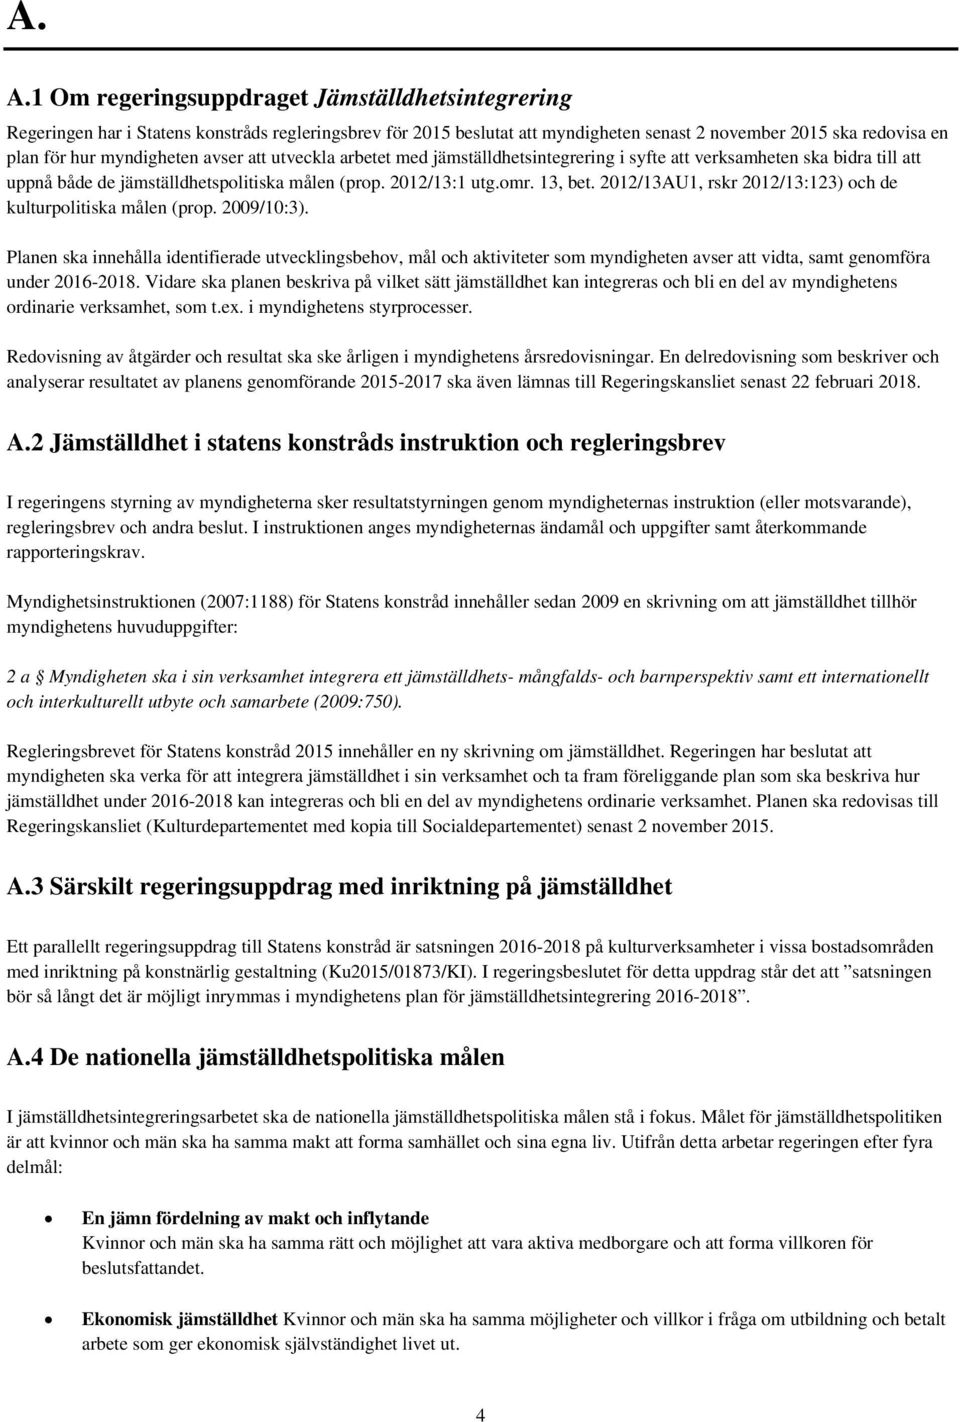 2012/13AU1, rskr 2012/13:123) och de kulturpolitiska målen (prop. 2009/10:3).